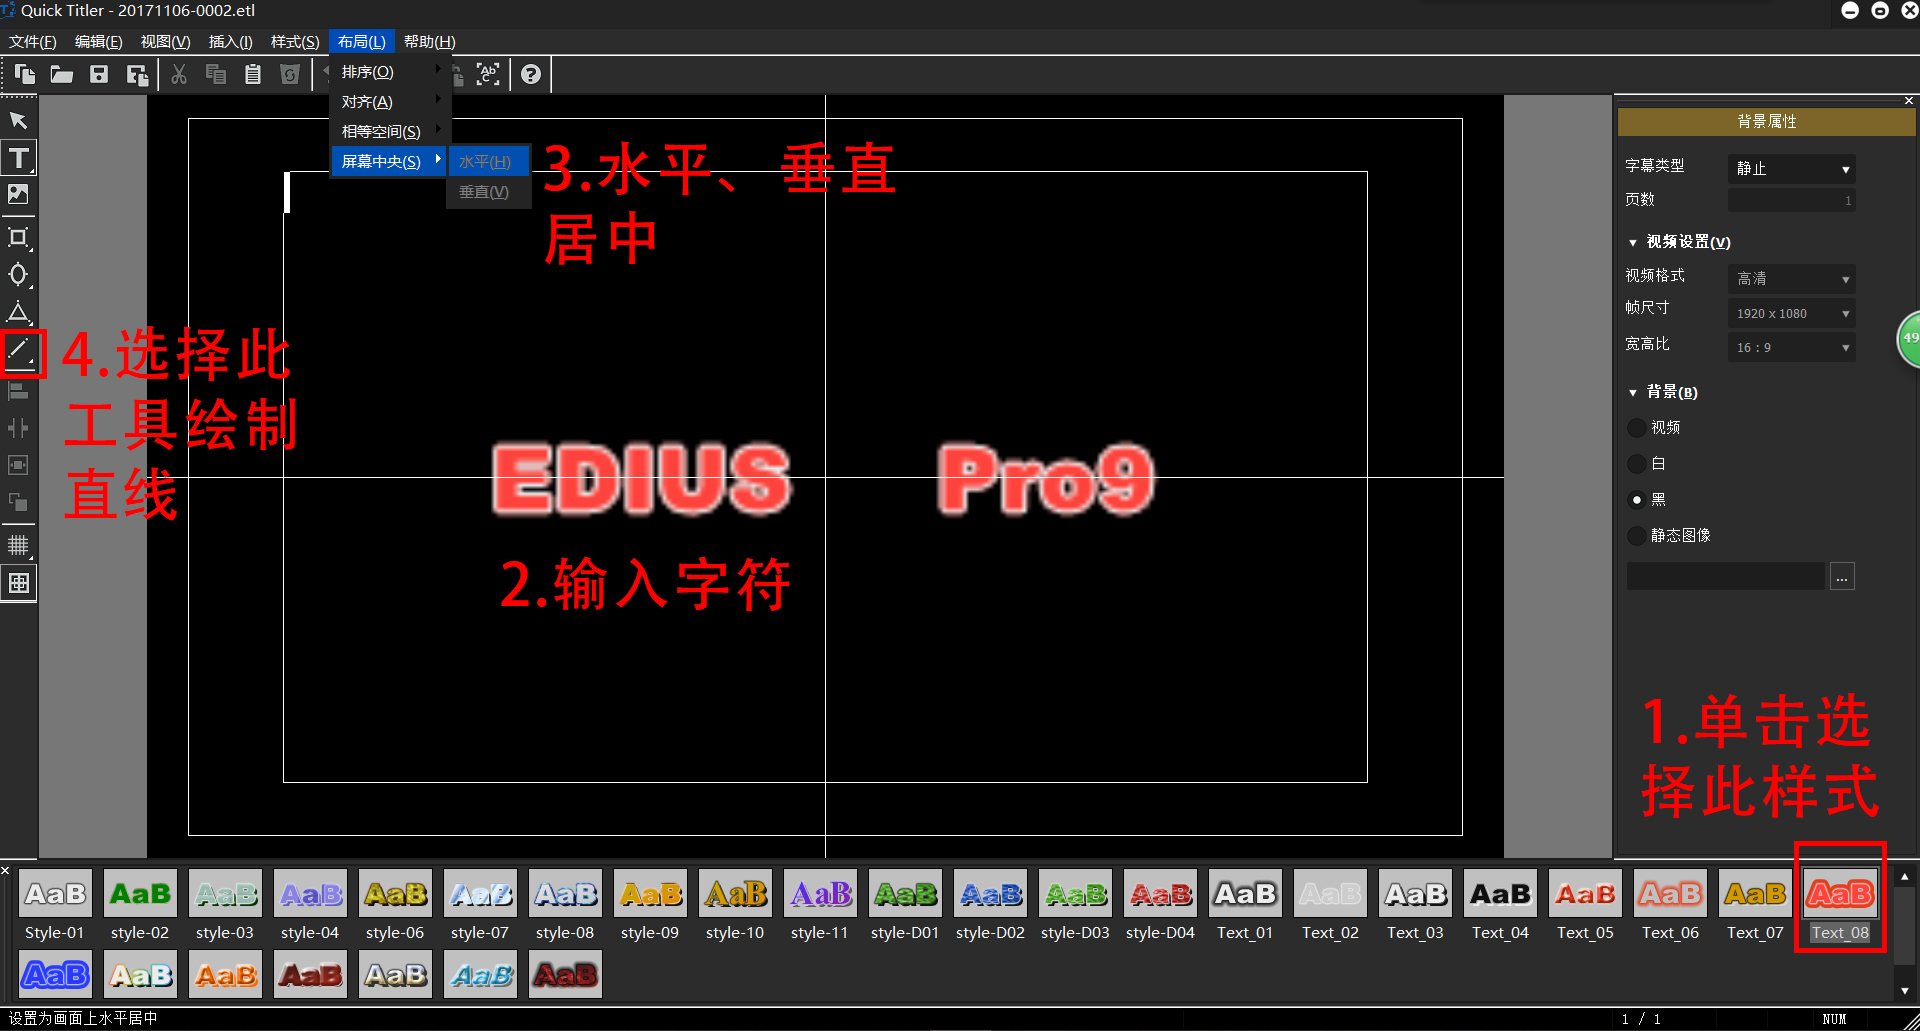 EDIUS 进阶 | mockup样机素材与EDIUS的配合使用 – 雷特视频网